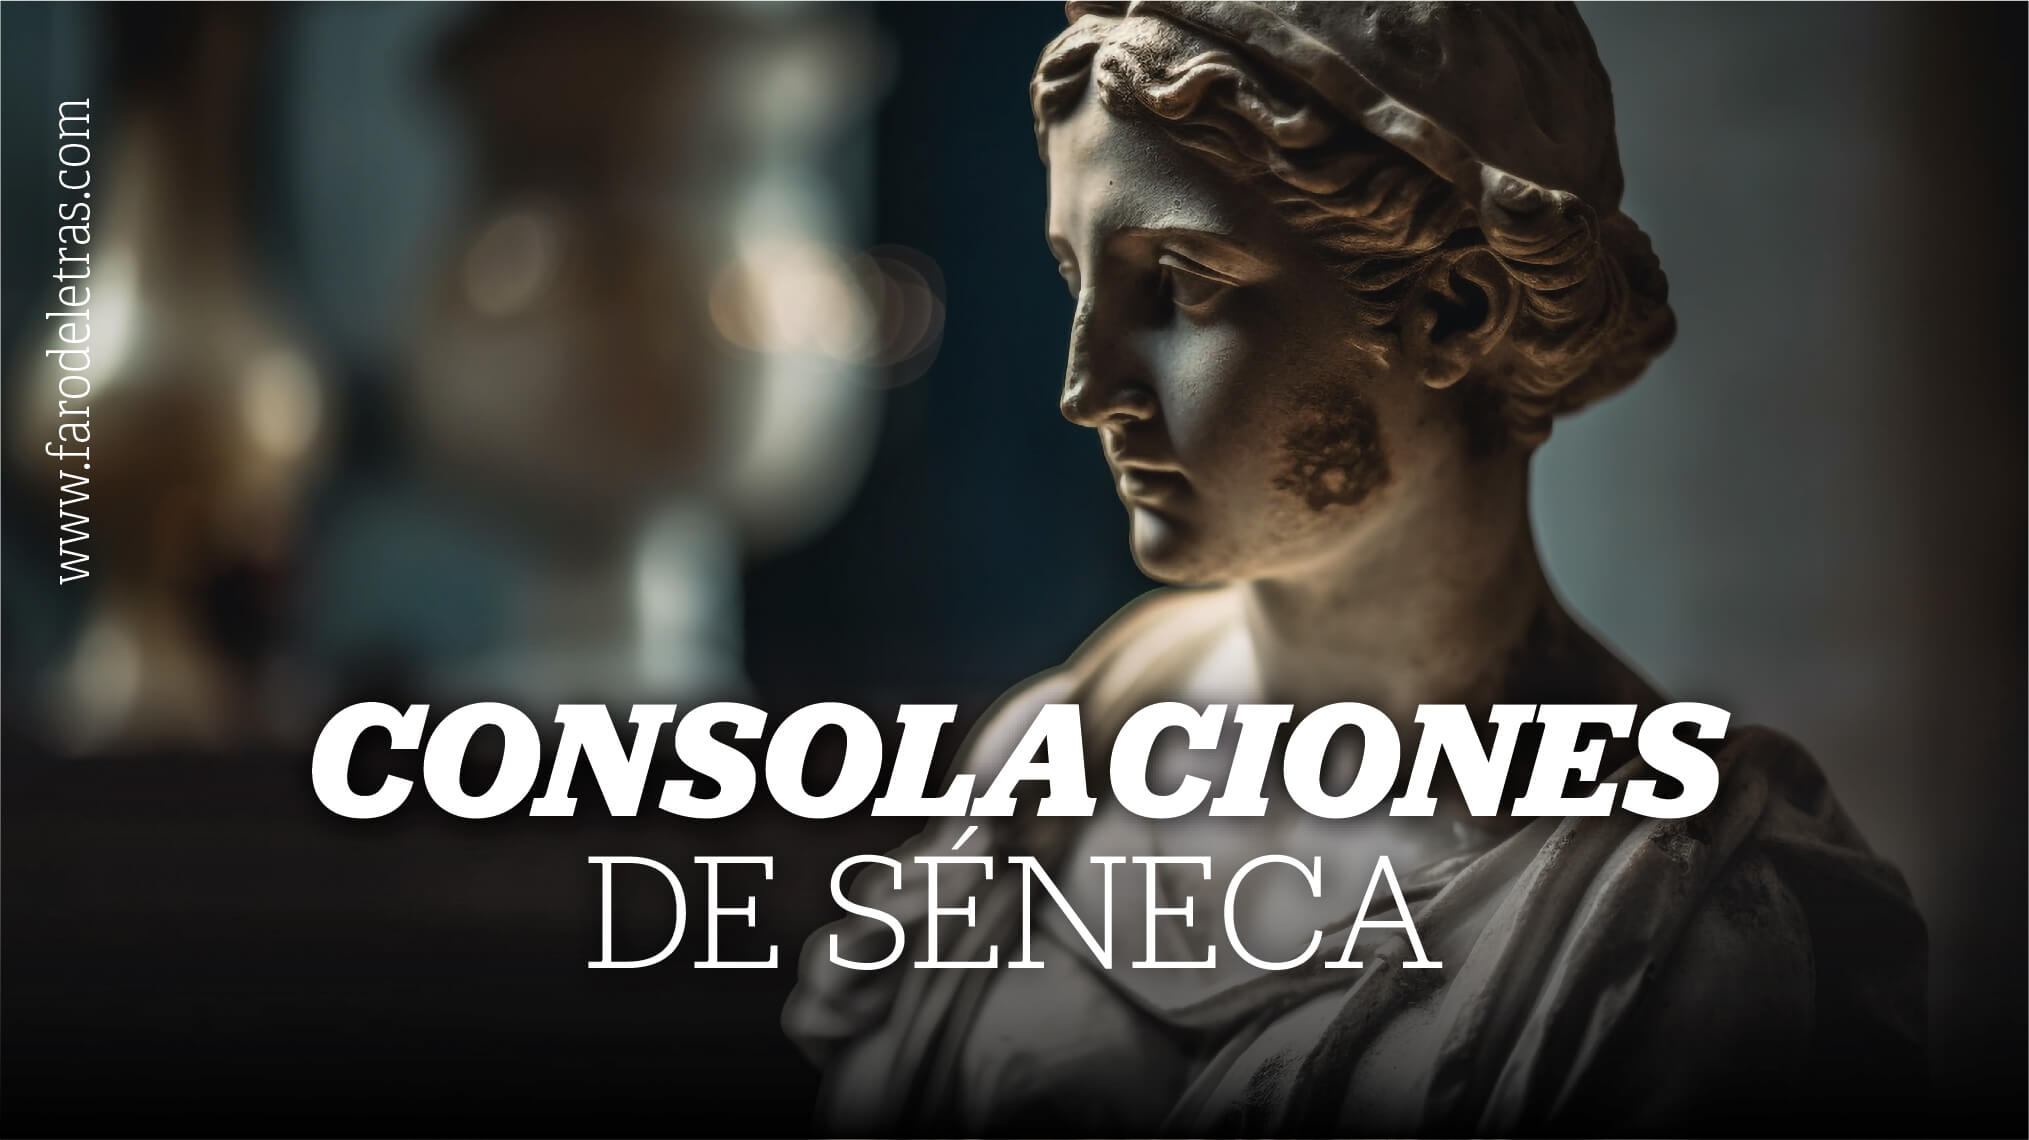 Las "Consolaciones" de Séneca